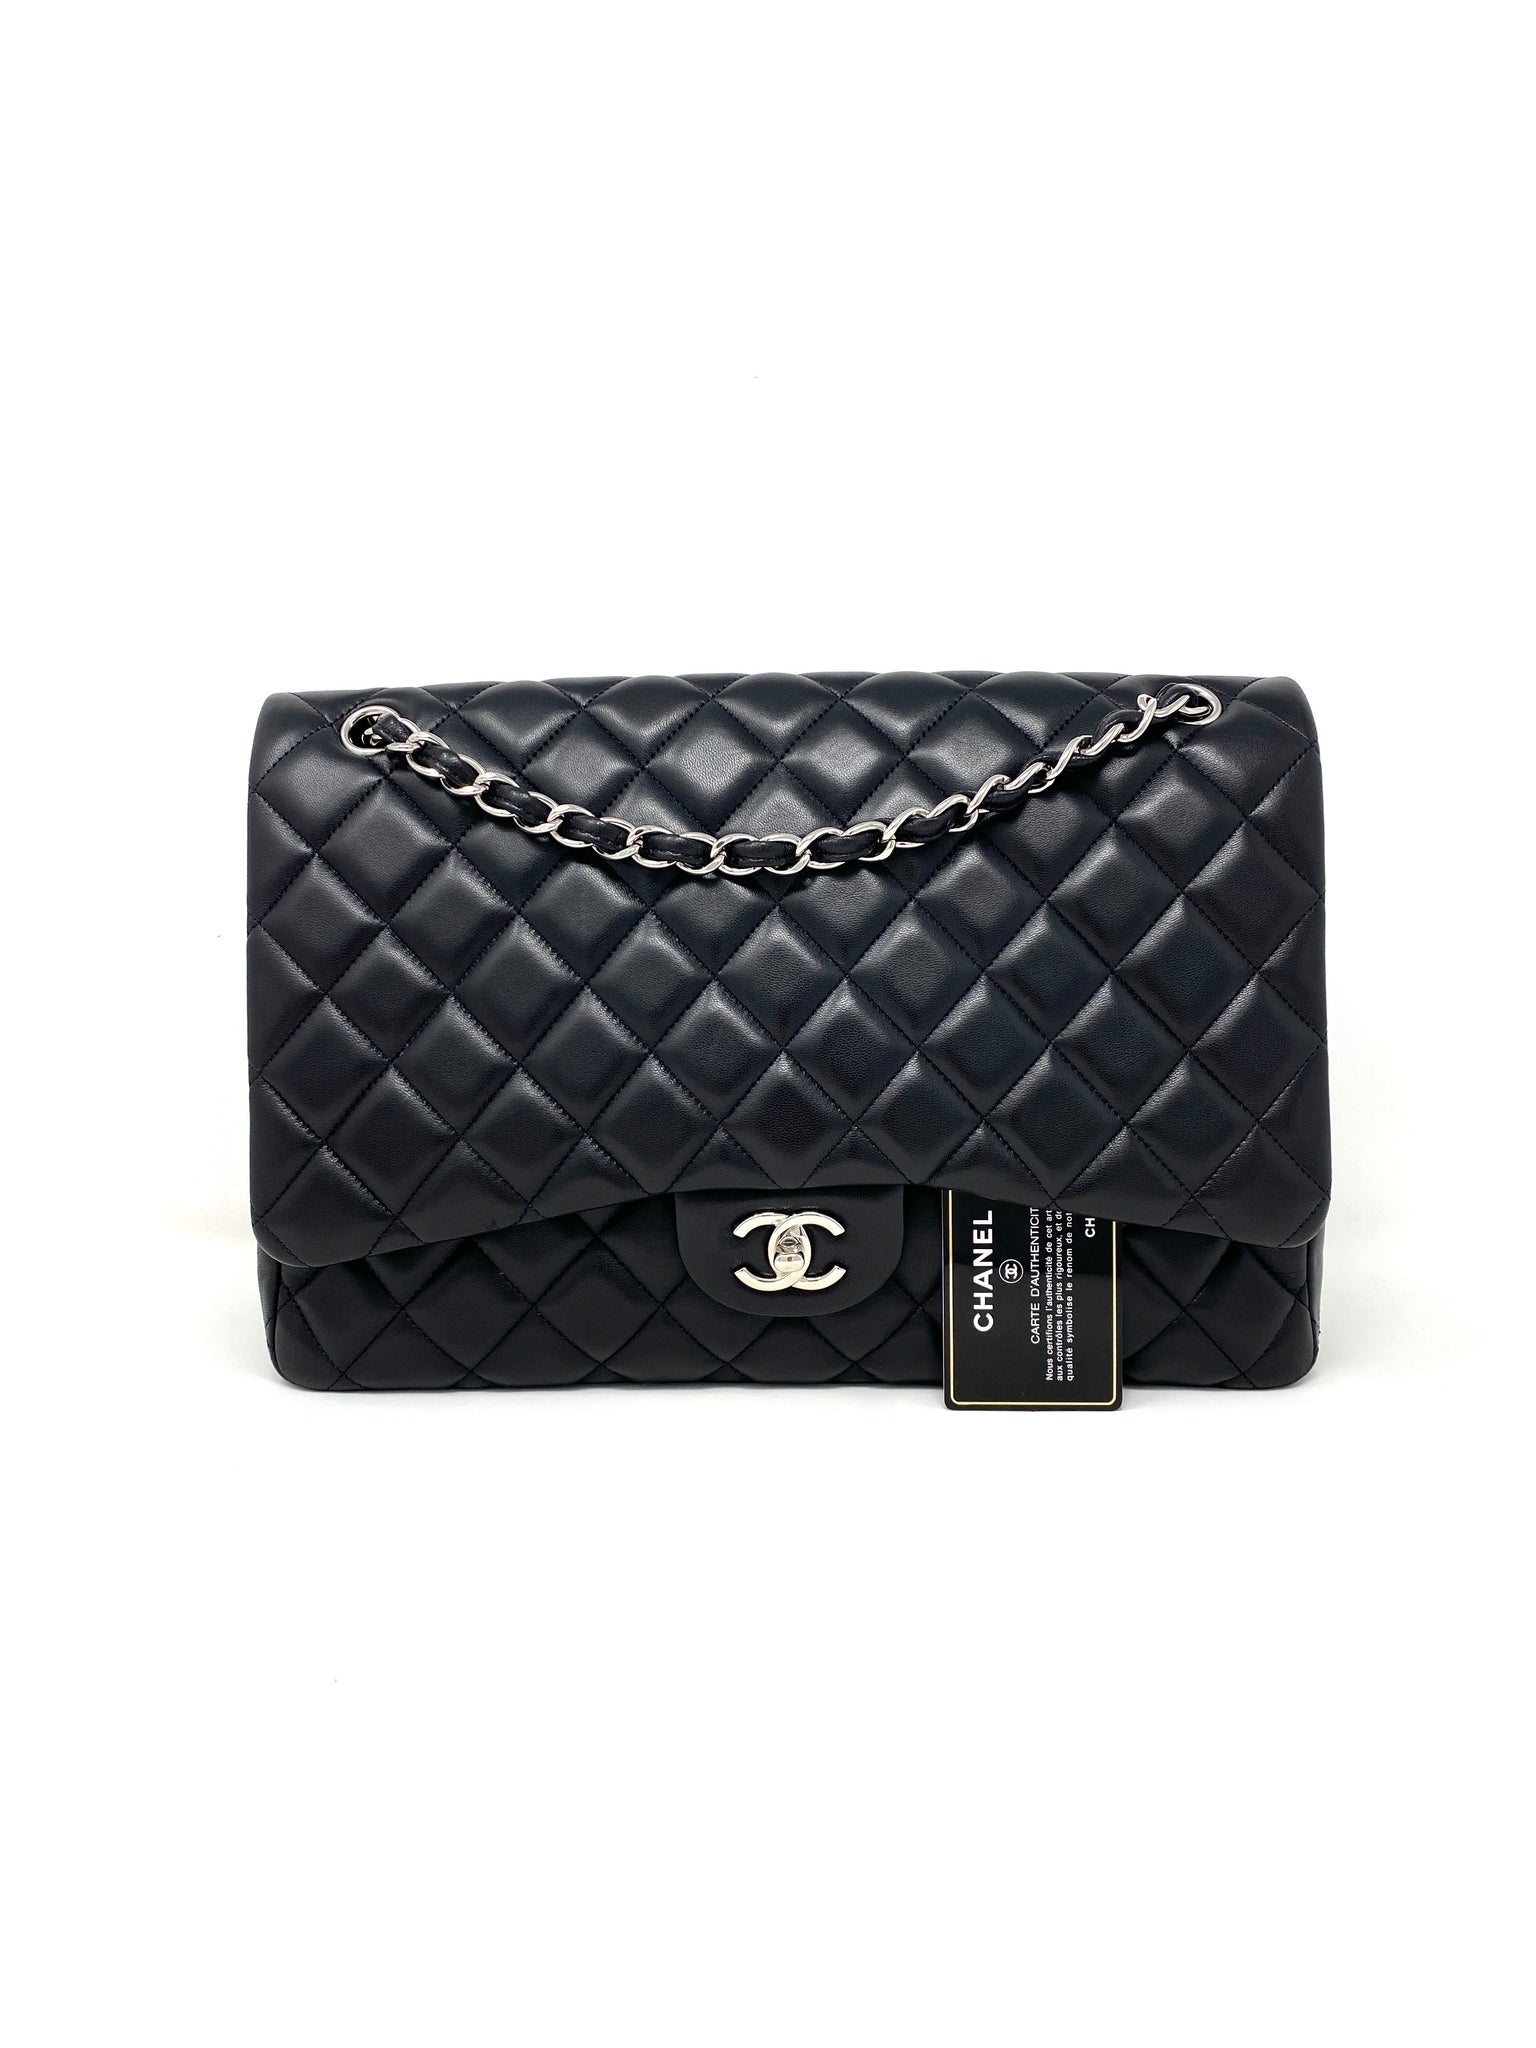 Chanel Maxi Grey Caviar Boy Bag - Vintage Lux